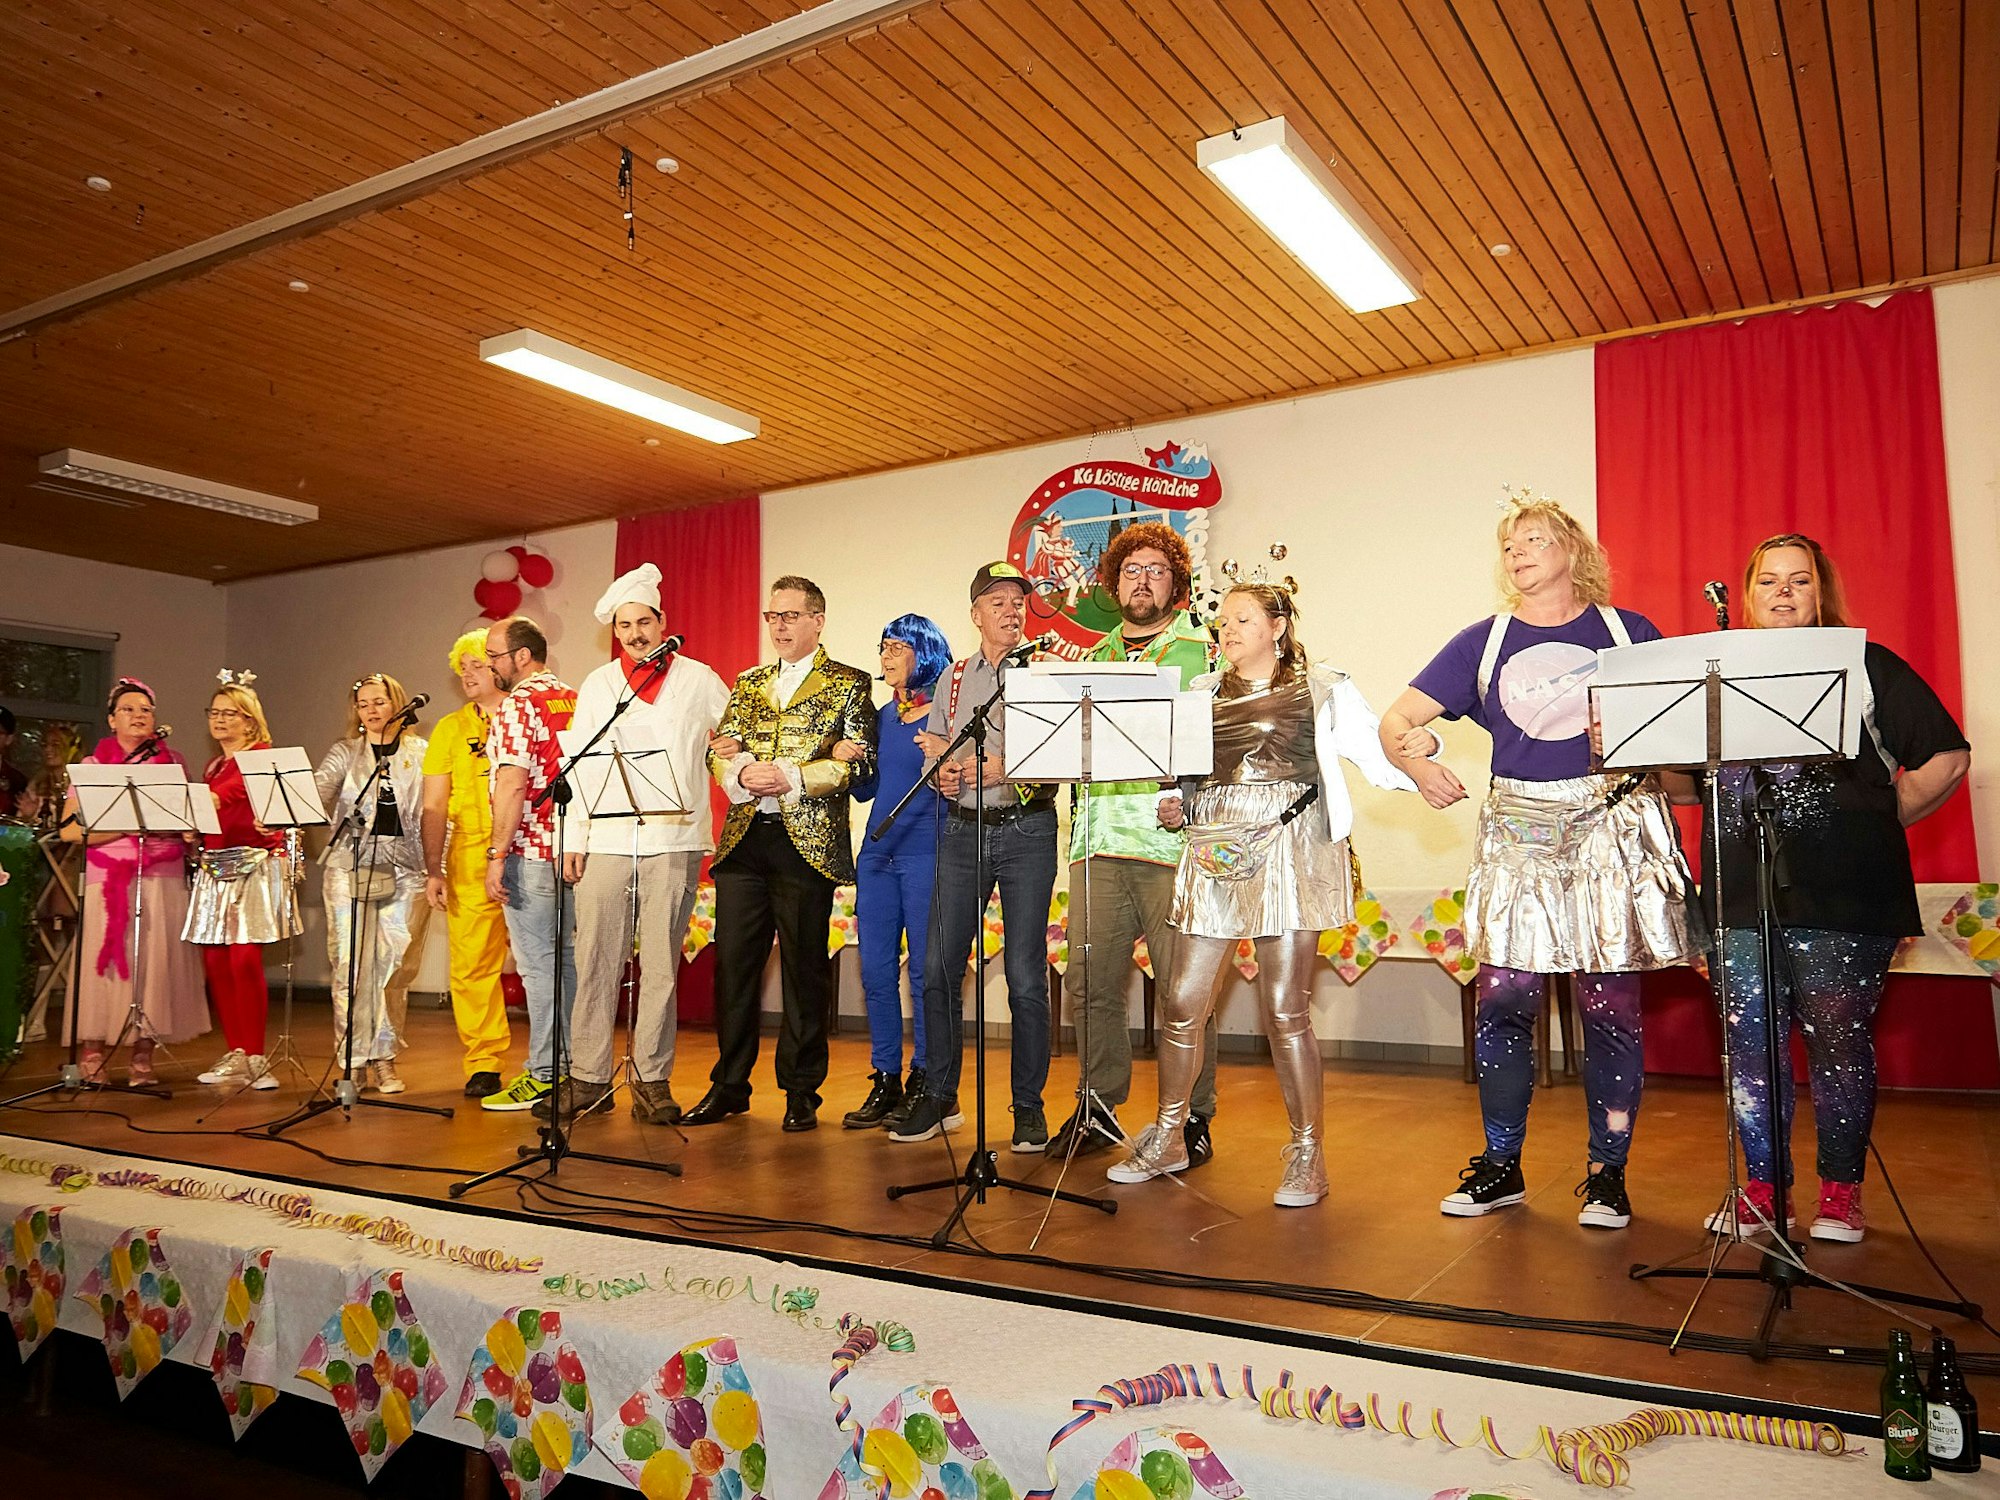 Mit ehemaligen Mitgliedern und Bürgermeister sangen die „Rathausschwalben“, die Gesangsgruppe der Nettersheimer Verwaltung. Sie stehen verkleidet nebeneinander auf der Bühne.